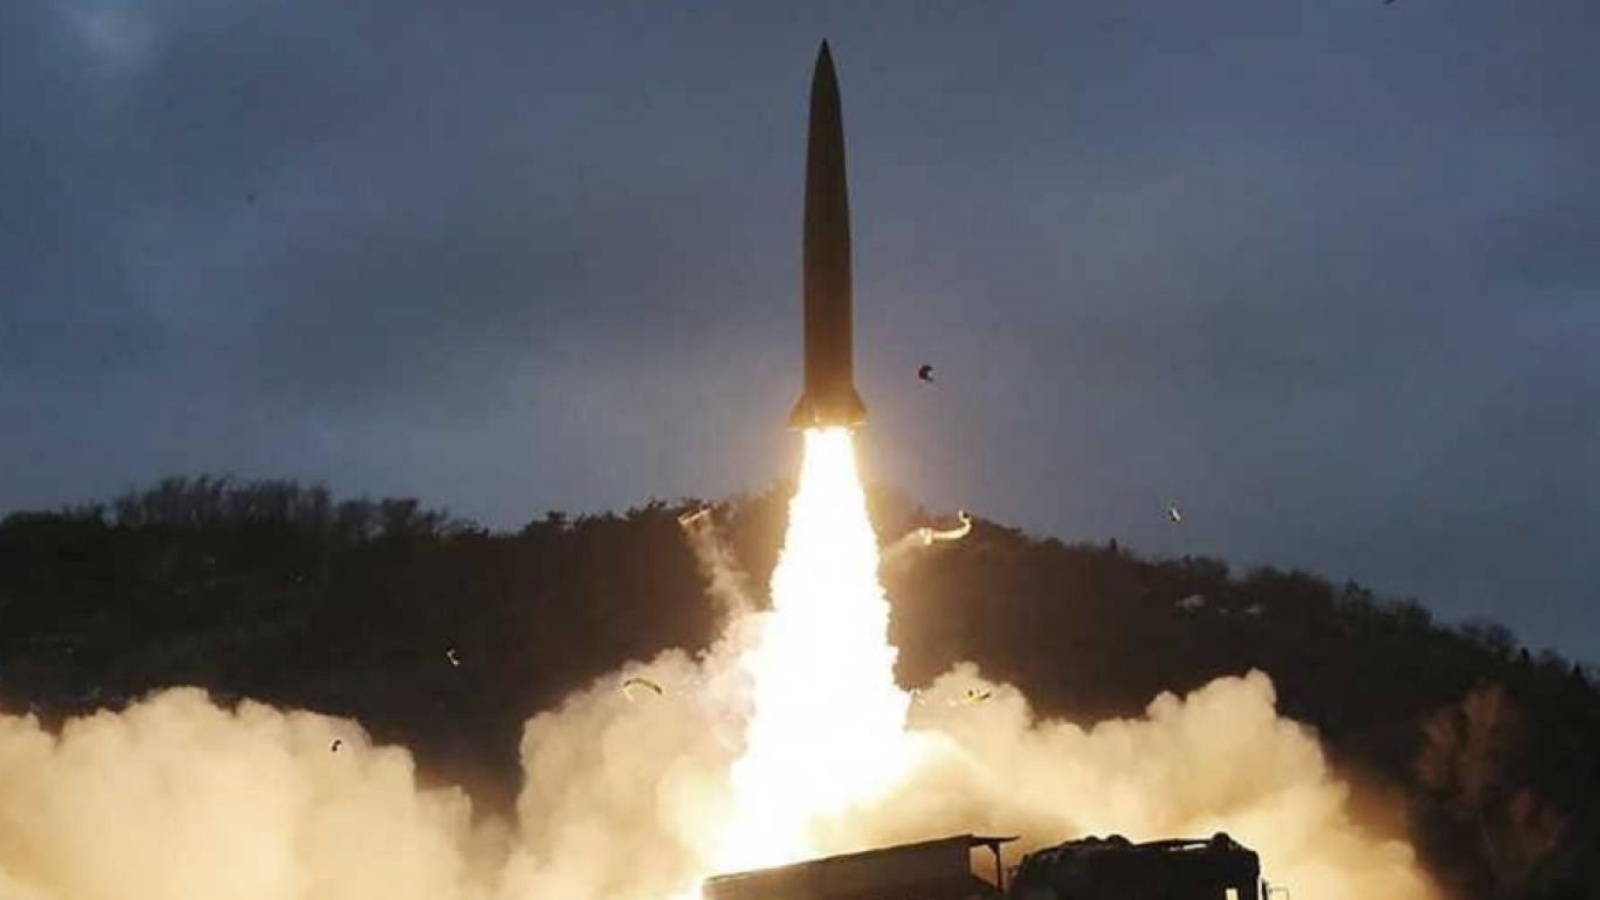 إطلاق مقذوف غير محدد من منطقة غير معروفة في كوريا الشمالية